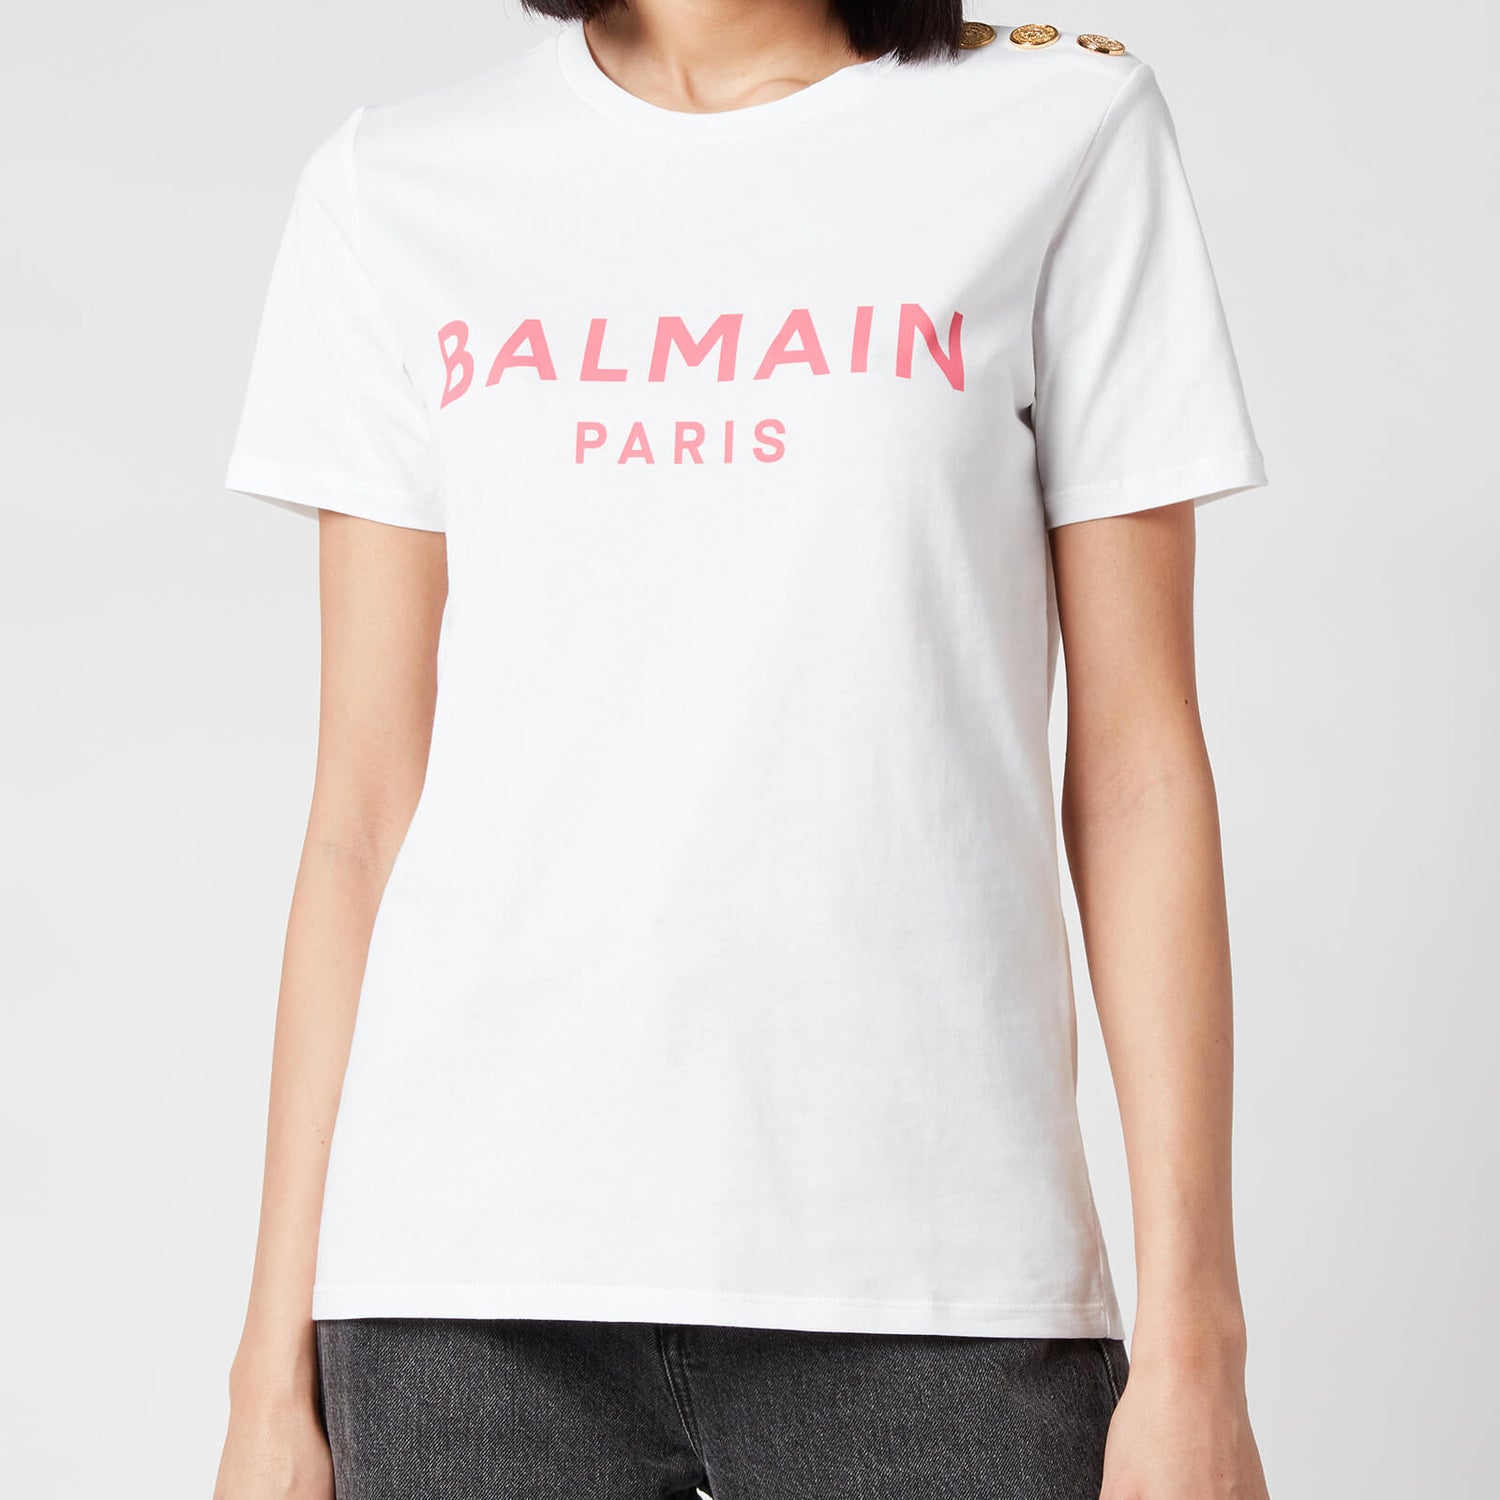 Balmain Women's 3 Button Printed Logo T-Shirt - Blanc/Rose - Free UK ...